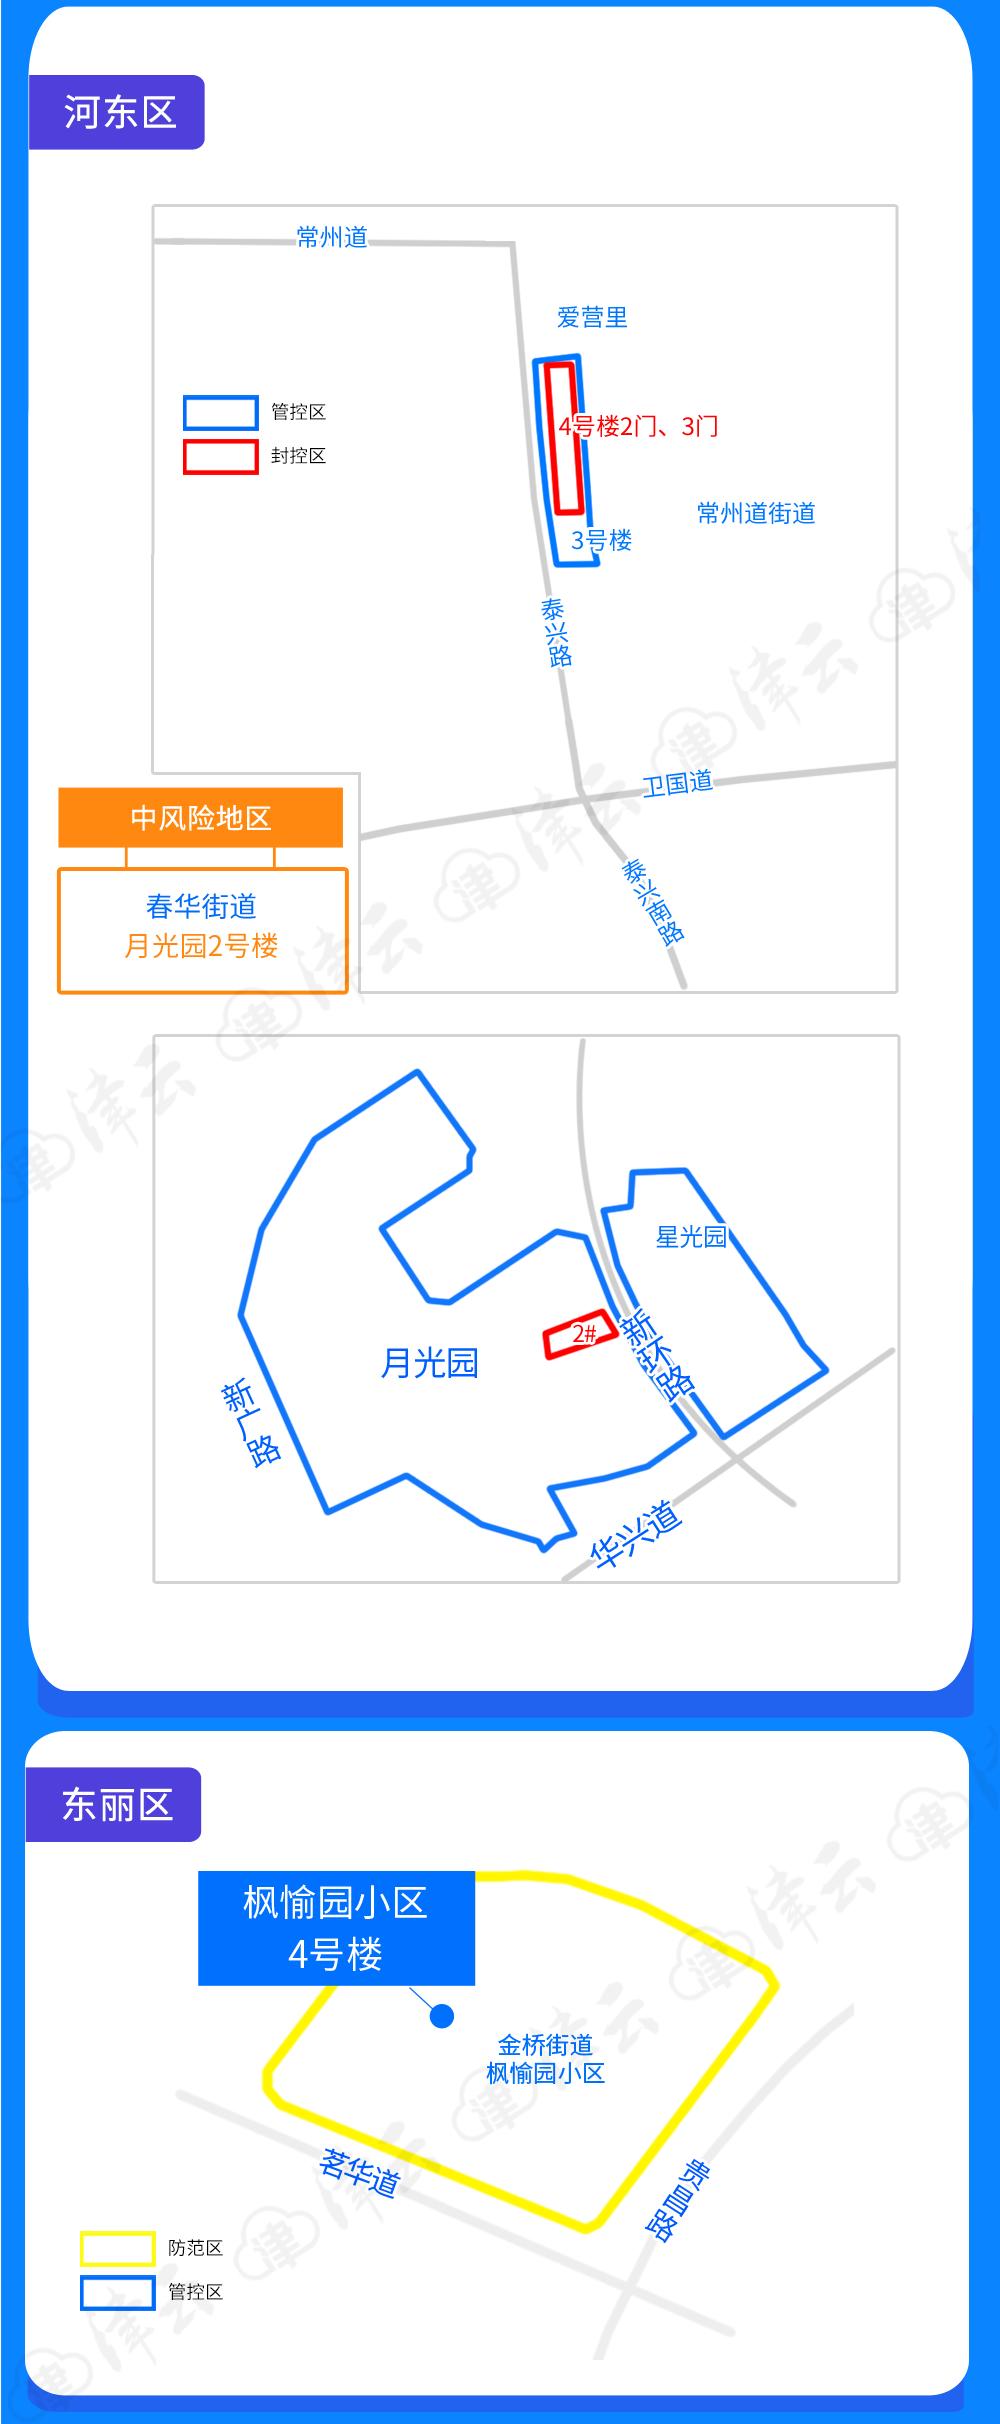 天津滨海新区疫情地图图片